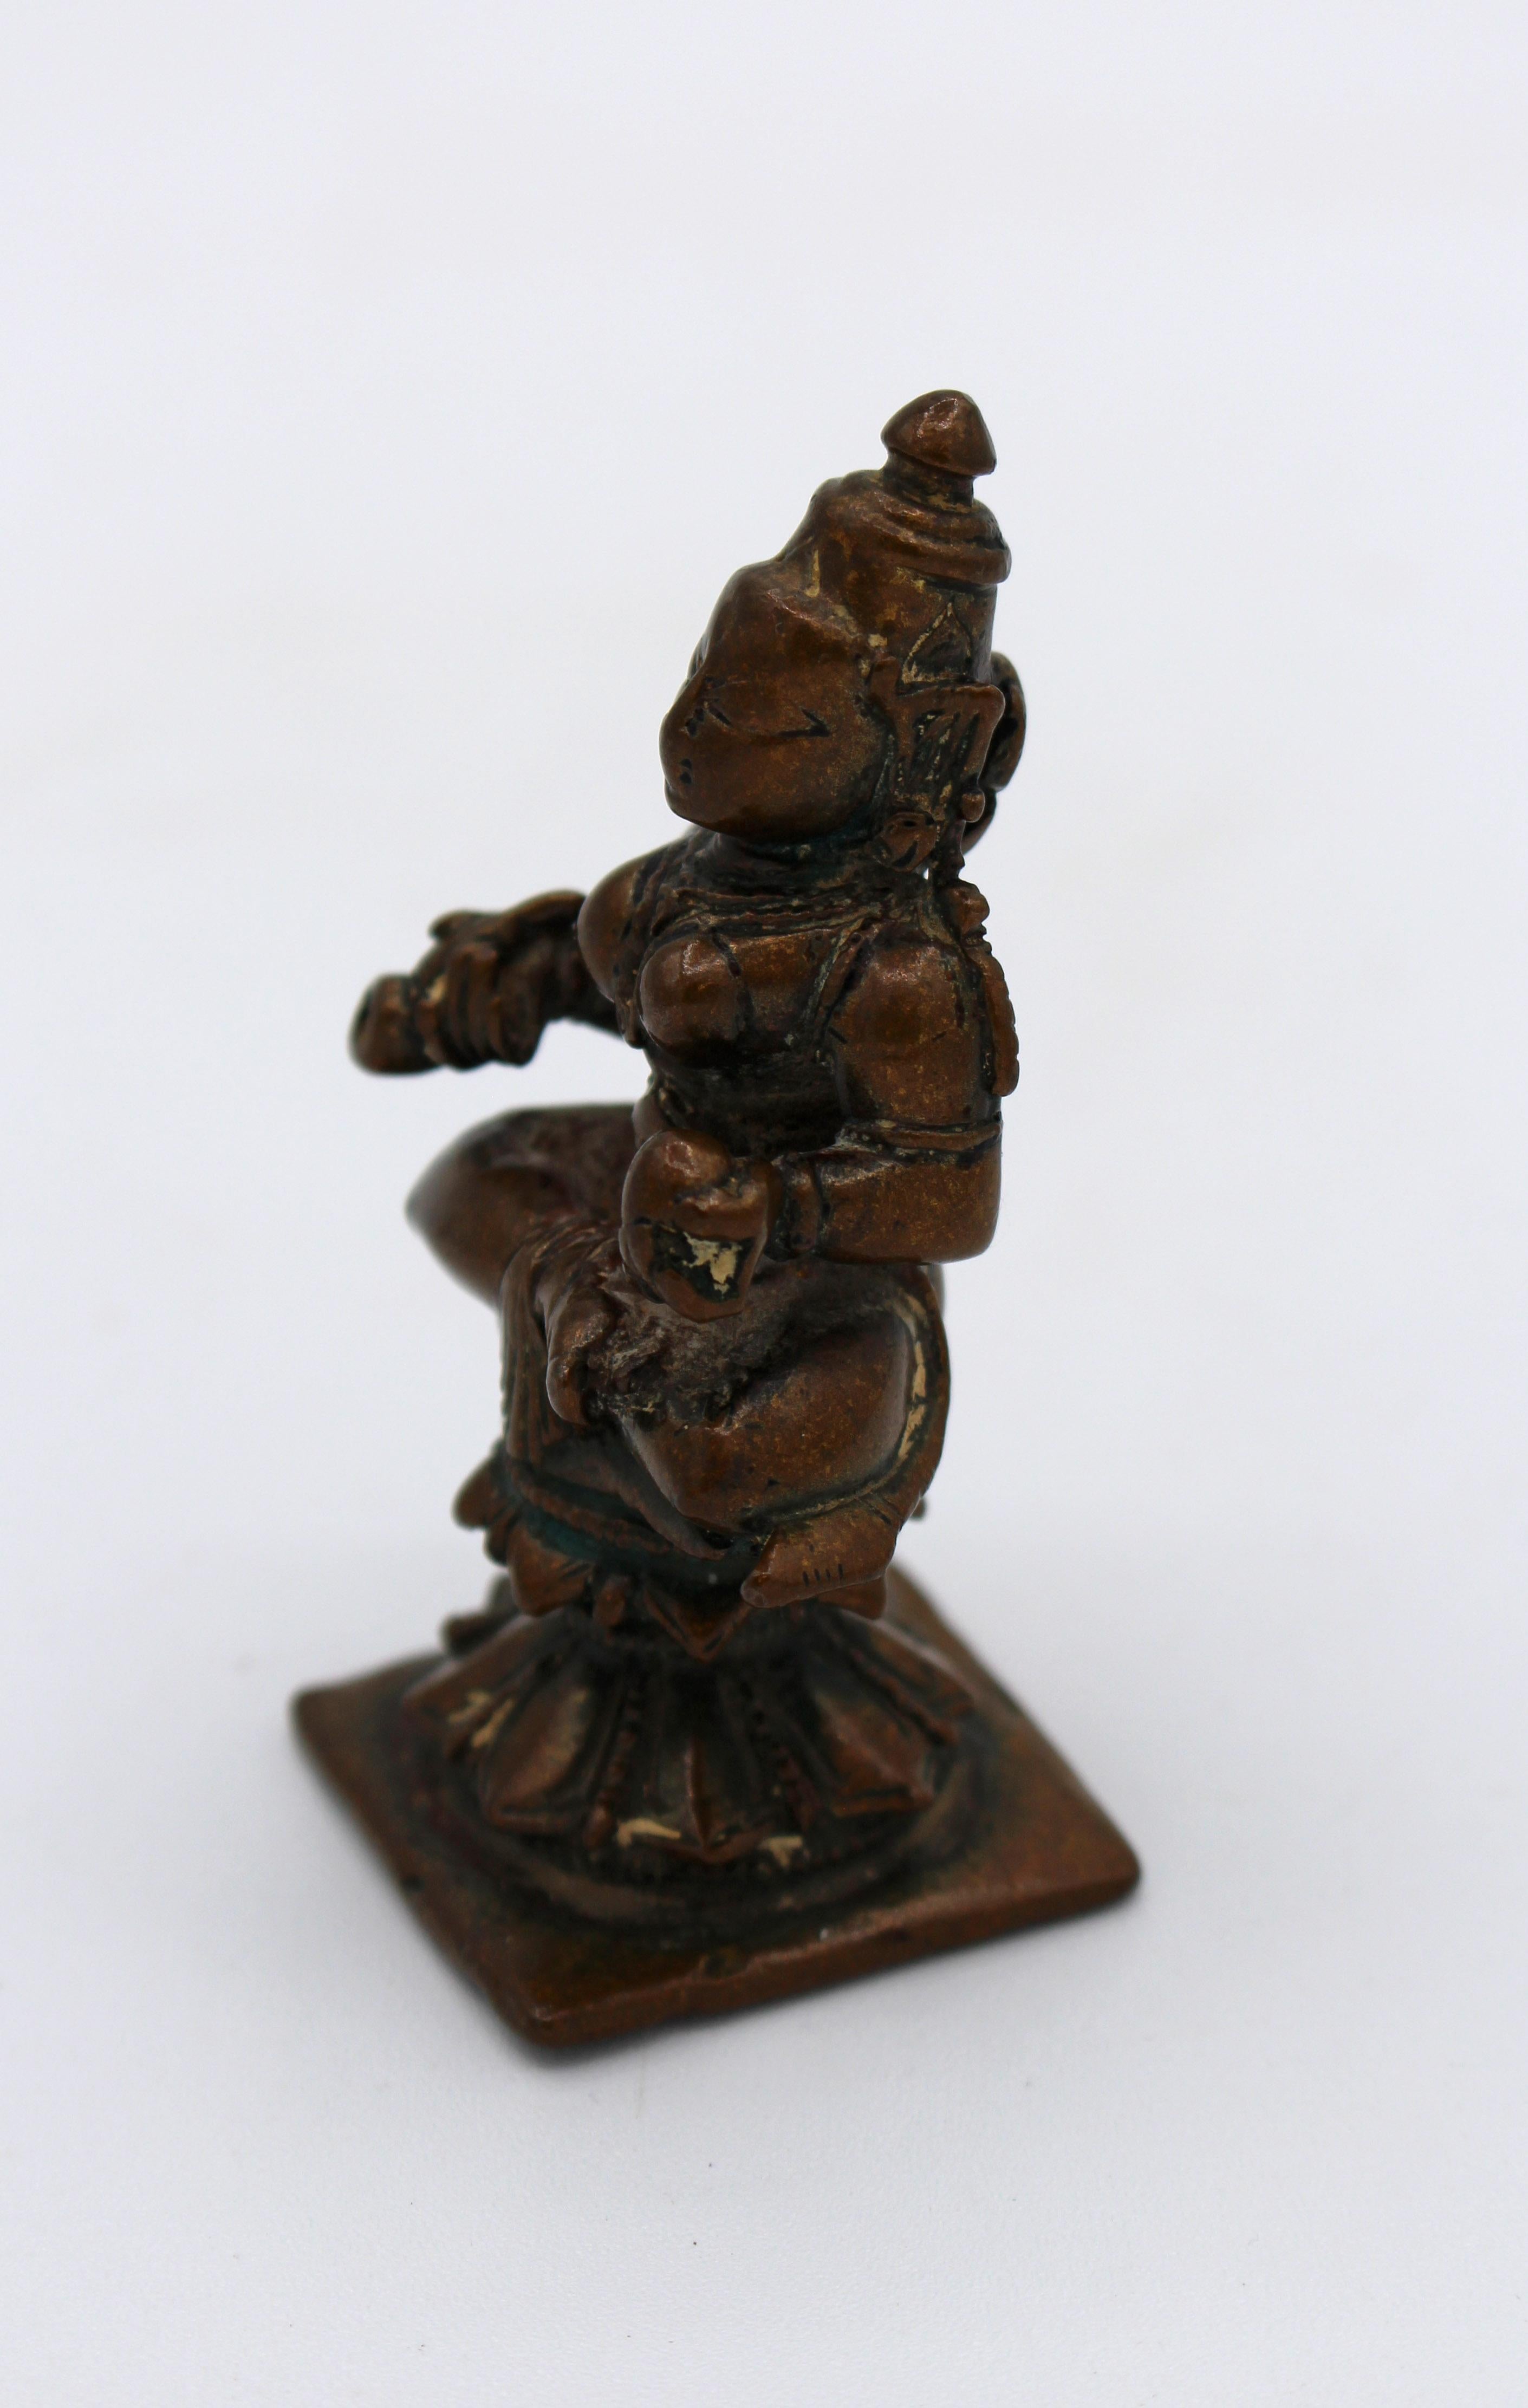 Statue Annapoorani (donneur de nourriture) en bronze datant de 1800, Inde. La déesse hindoue de la nourriture et de la cuisine. Coulée fine. Procédé de cire perdue. Mesures : 2 1/2